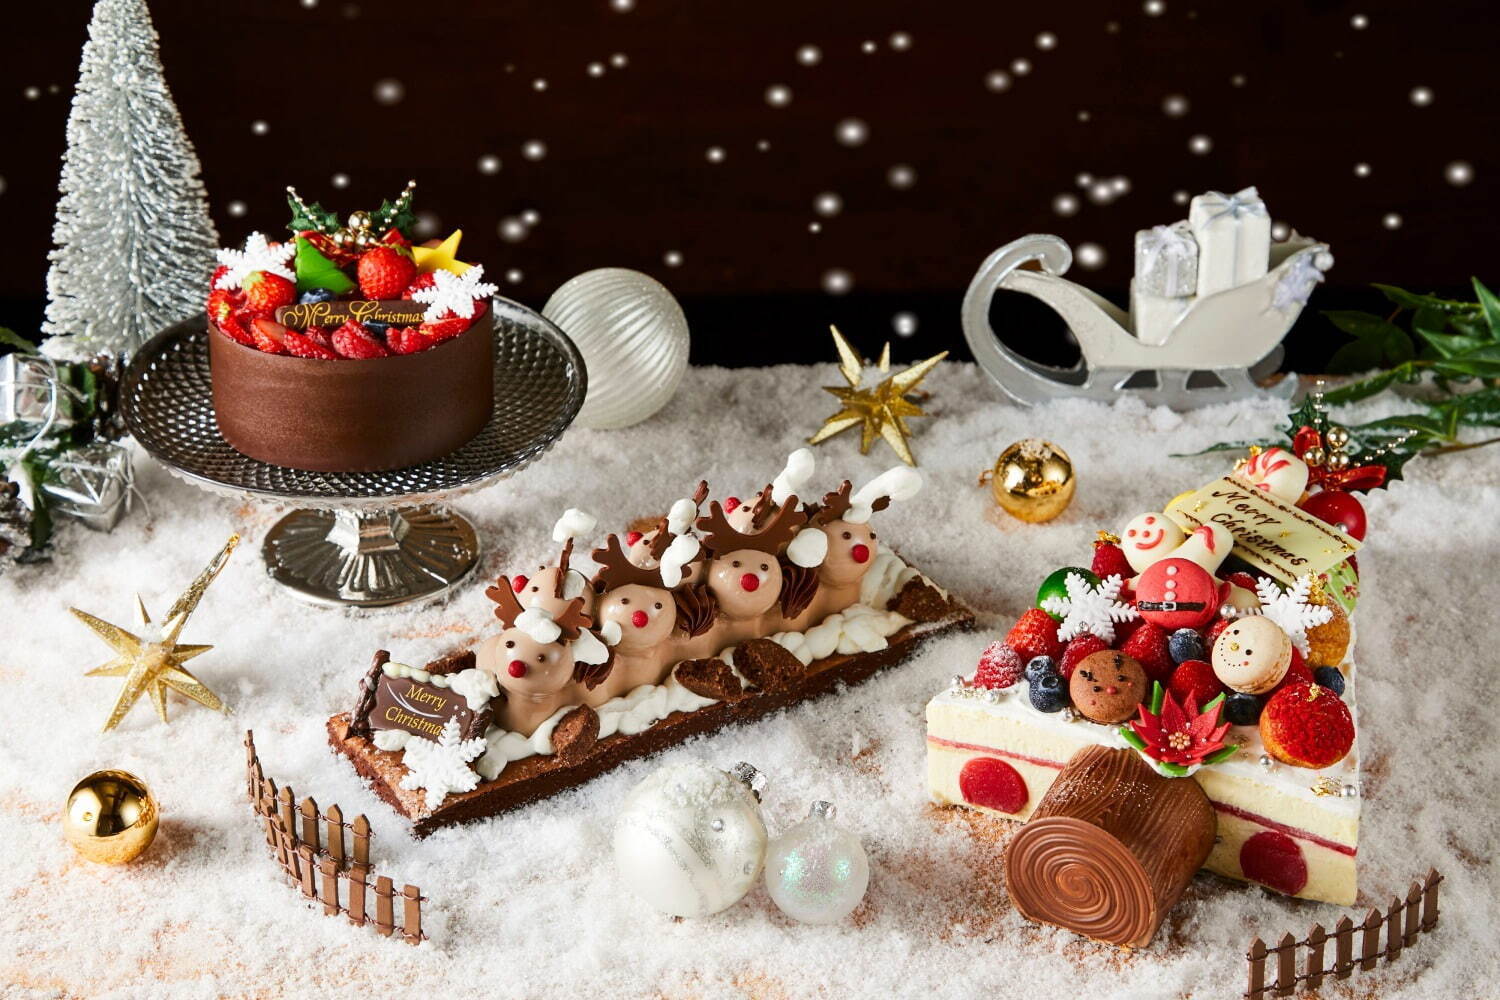 ハイアット リージェンシー 東京のクリスマスケーキ21 飾り付けを楽しむ ツリー のケーキ ファッションプレス